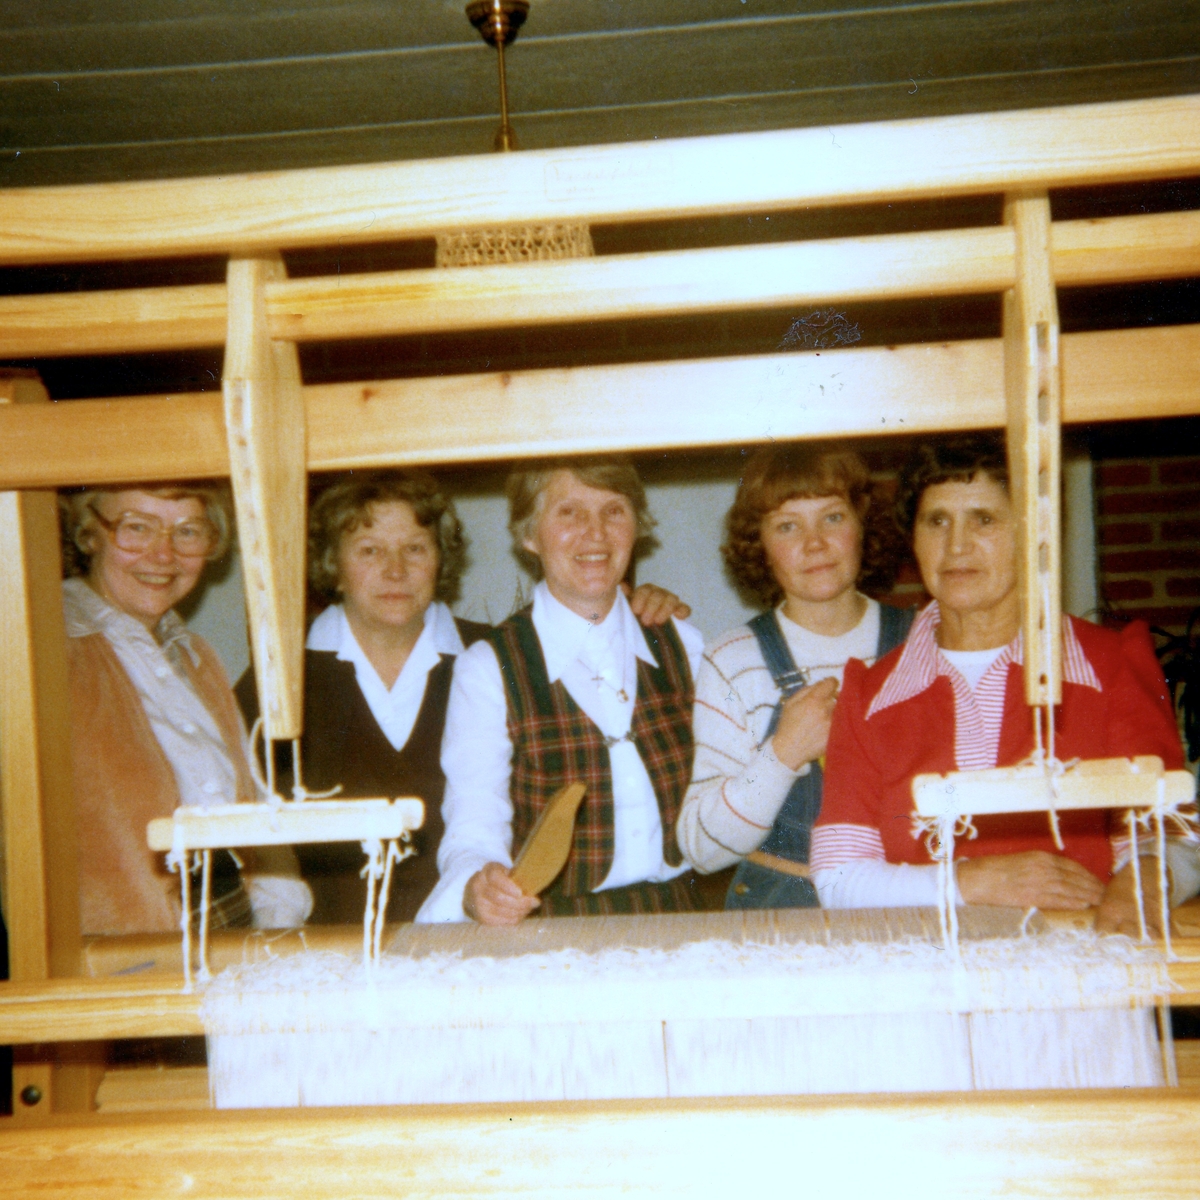 Hembygdskommittén, Kållereds Hembygdsgille 1980. Från vänster: 1. Ingegärd Benkel, 2. Gunhild Melin, 3. Emy Johansson, 4. Lena Lindgren och 5. Dagmar Svensson. Relativt motiv: A2925.